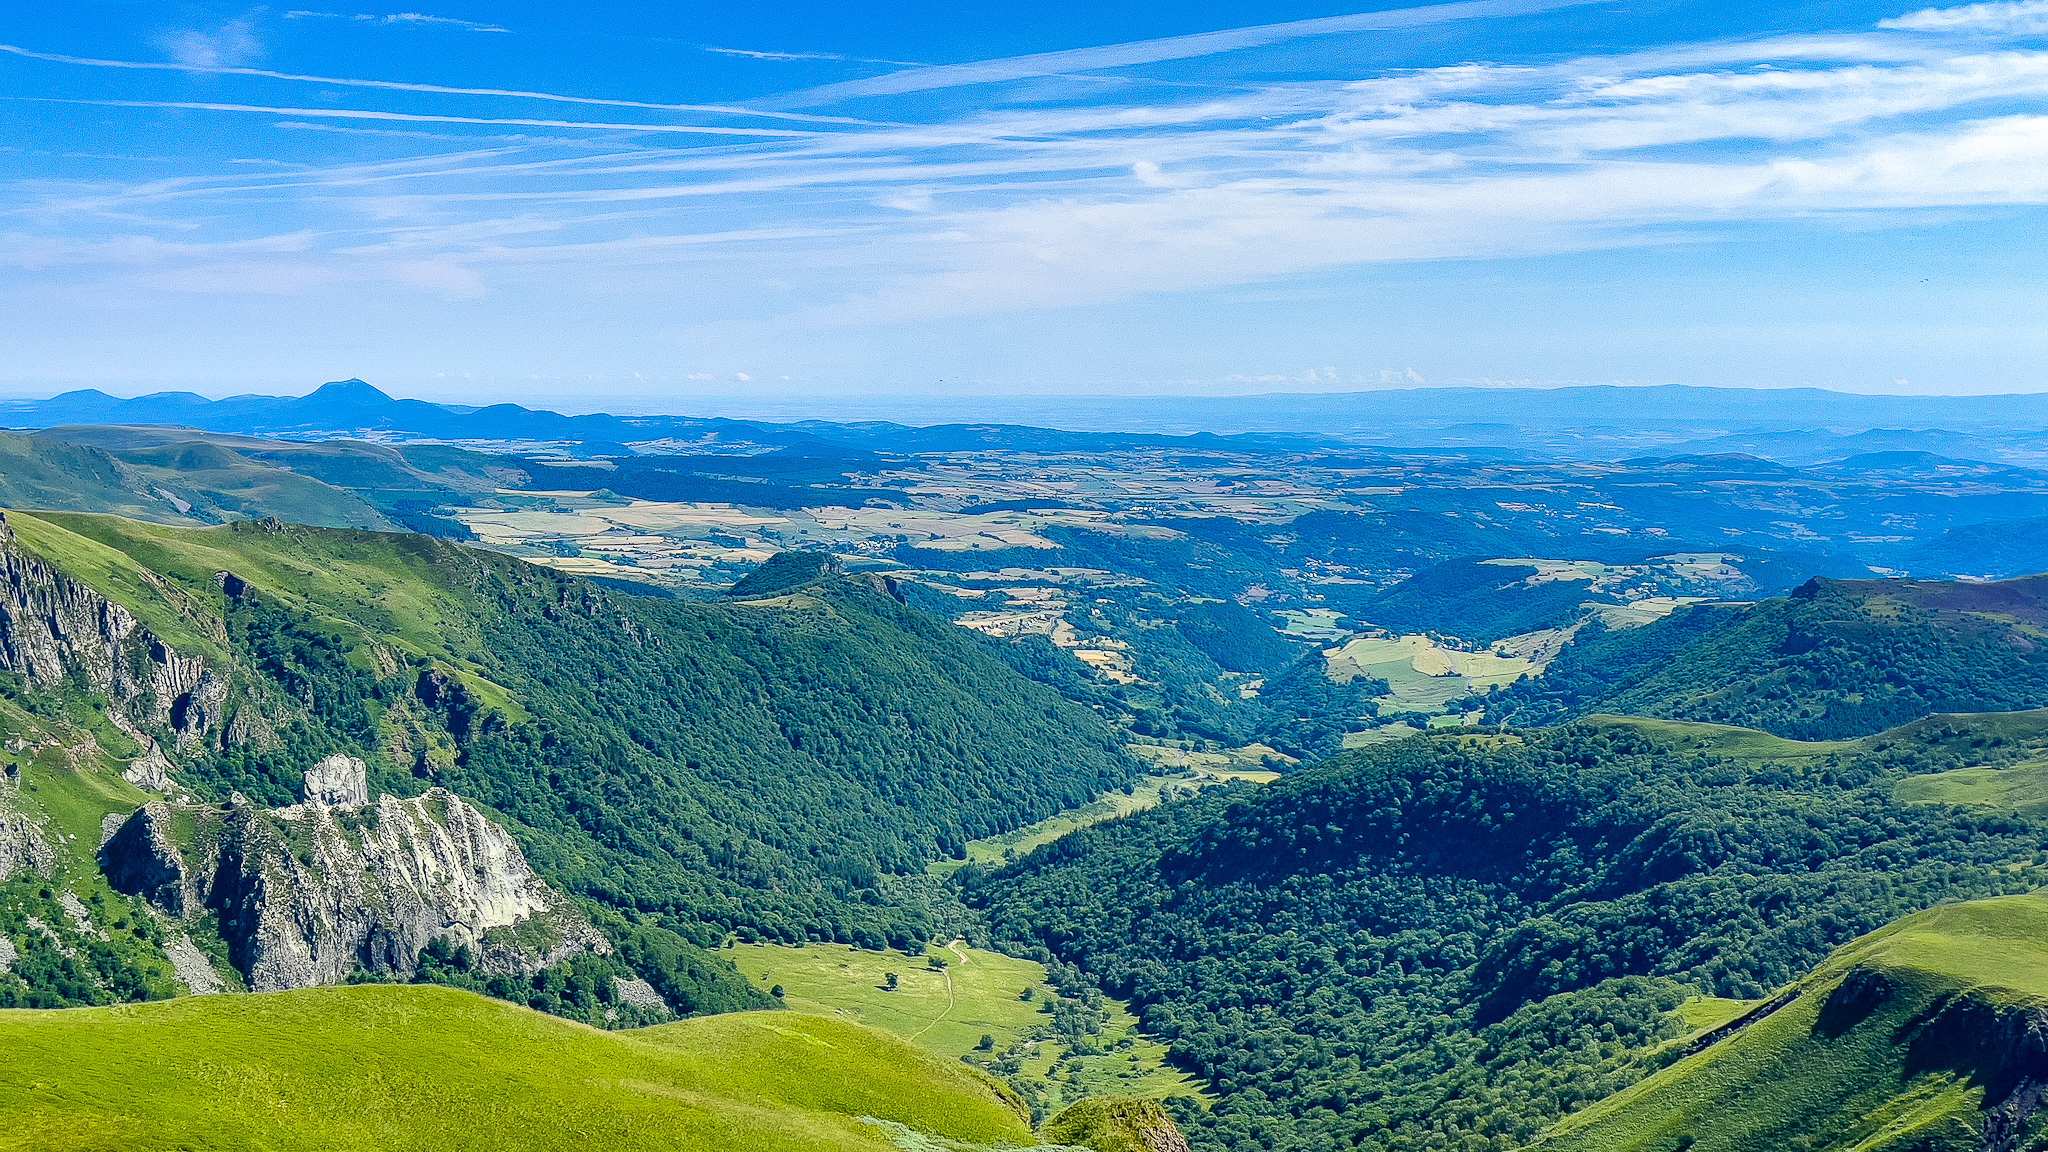 Puy de la Perdrix, beautiful view of the Chaudefour Valley